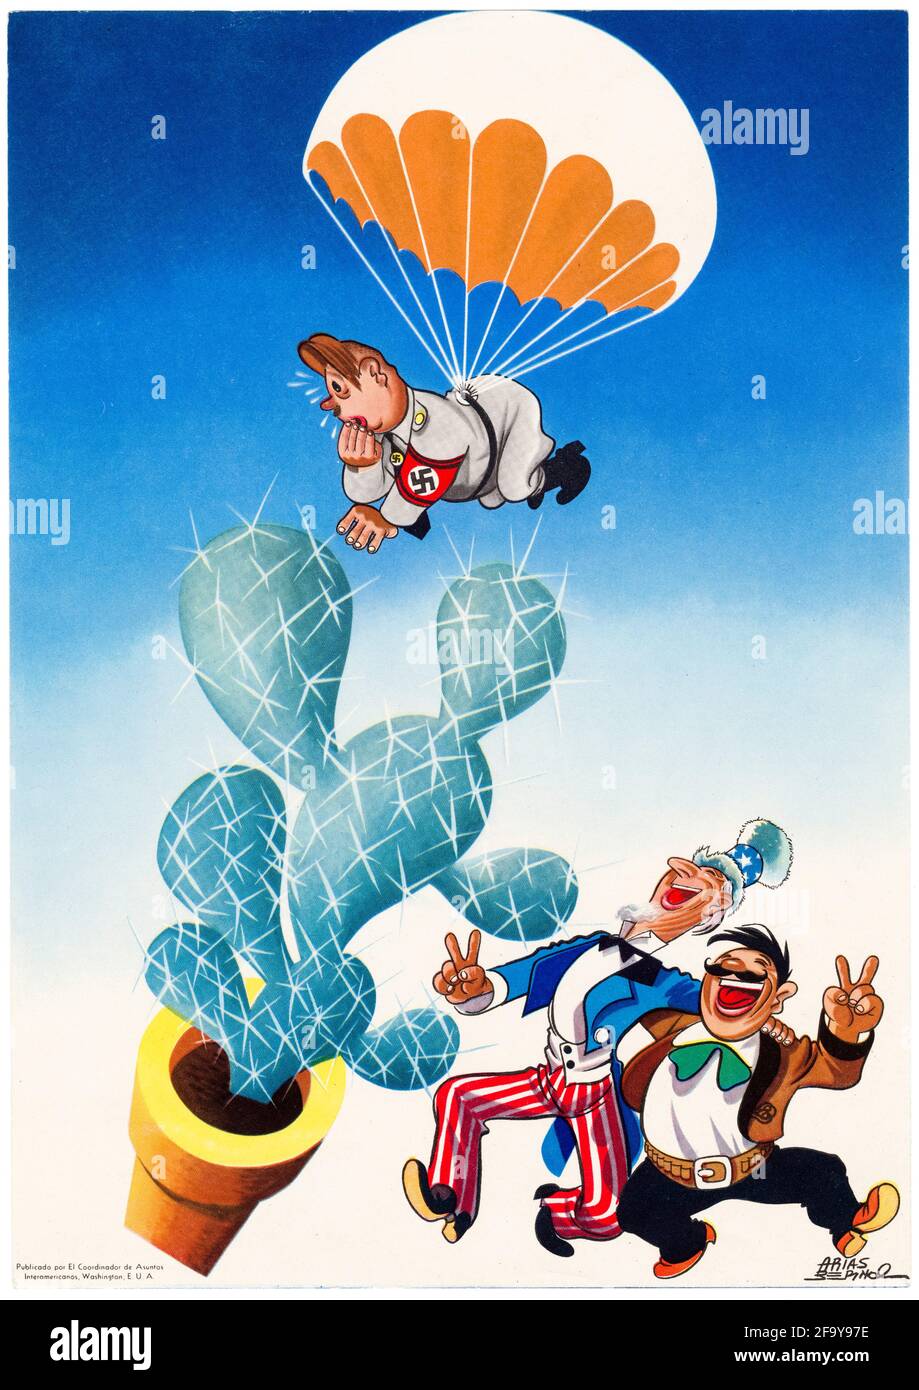 Südamerika und Amerikaner, OCIAA-Propagandaplakat aus dem 2. Weltkrieg, Hitler landete auf einem Kaktus, Onkel Sam und südamerikanische Karikaturen lachten, 1942-1945 Stockfoto